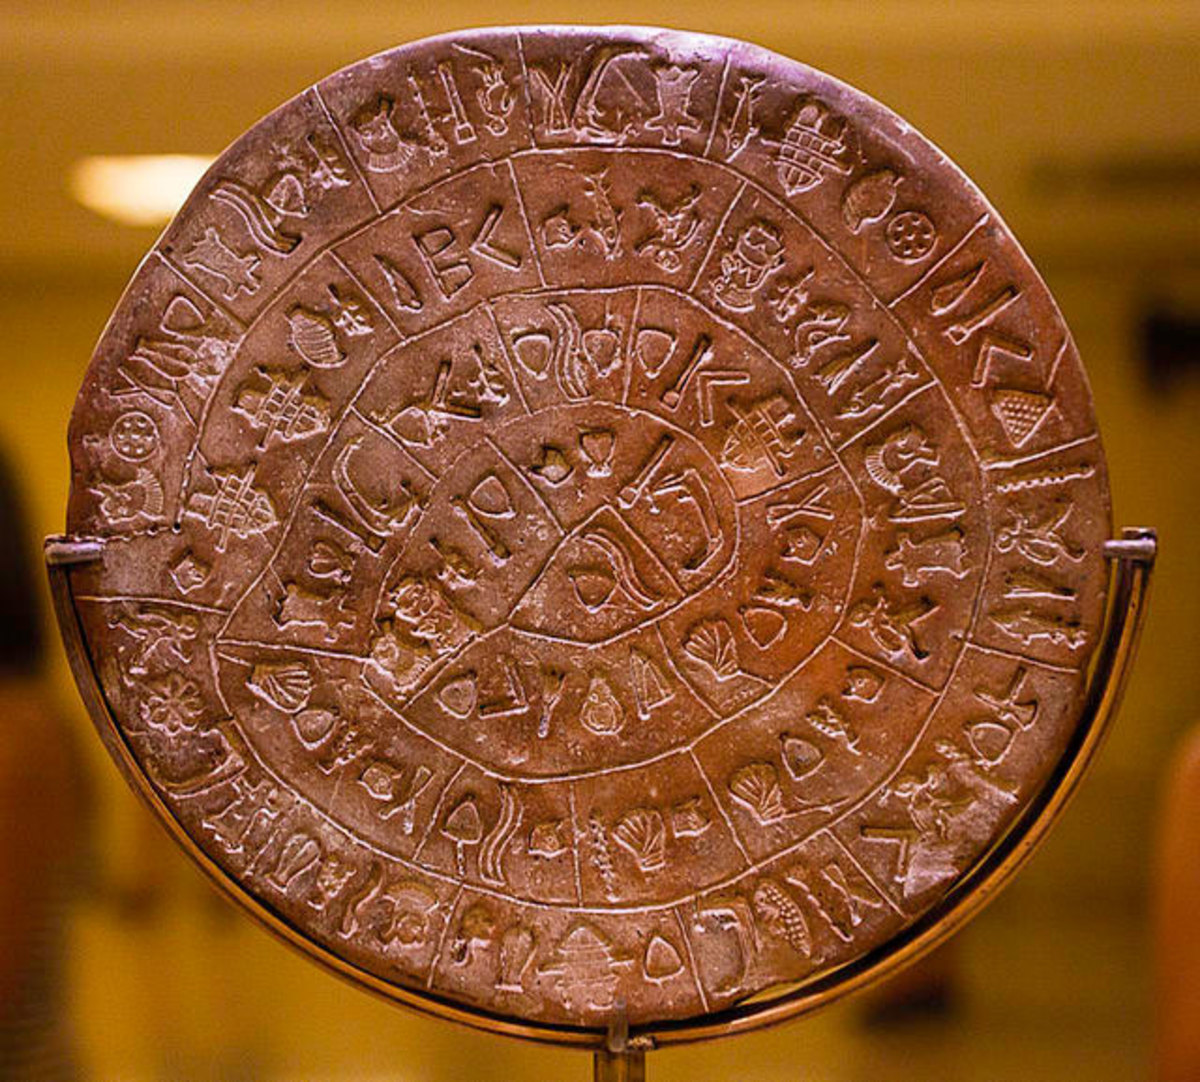 Το πιο αρχαίο CD – ROM! “Διάβασαν” 4.000 χρόνια μετά τον Δίσκο της Φαιστού – Πάνω του είναι γραμμένη μια προσευχή!